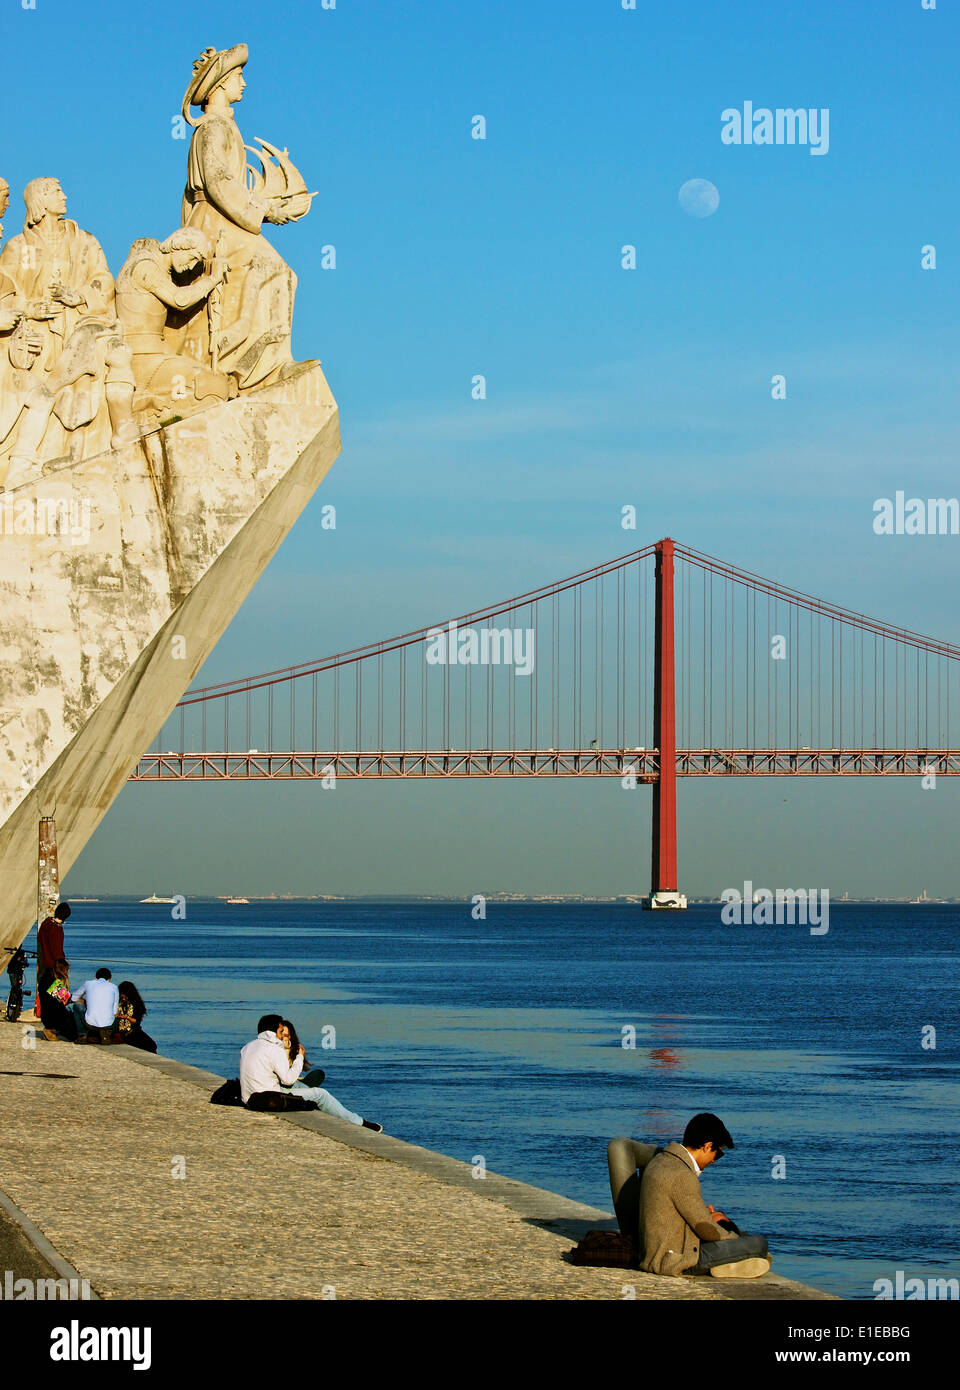 Tage scène avec les touristes, Monument des Découvertes, le 25 avril et le pont de lune, Lisbonne Portugal Europe de l'ouest Banque D'Images